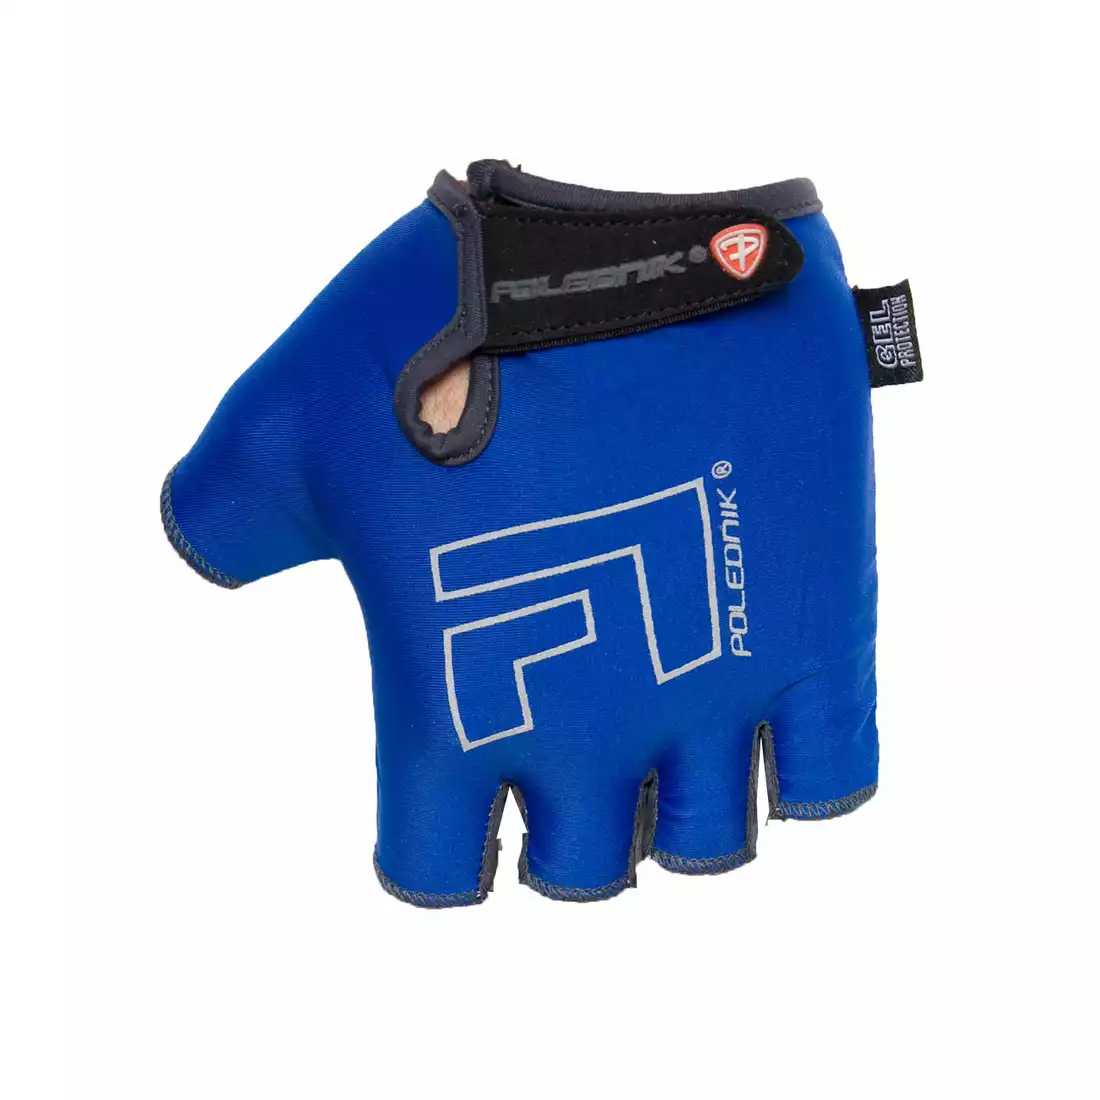 POLEDNIK F1 NEW14 rękawiczki rowerowe niebieskie